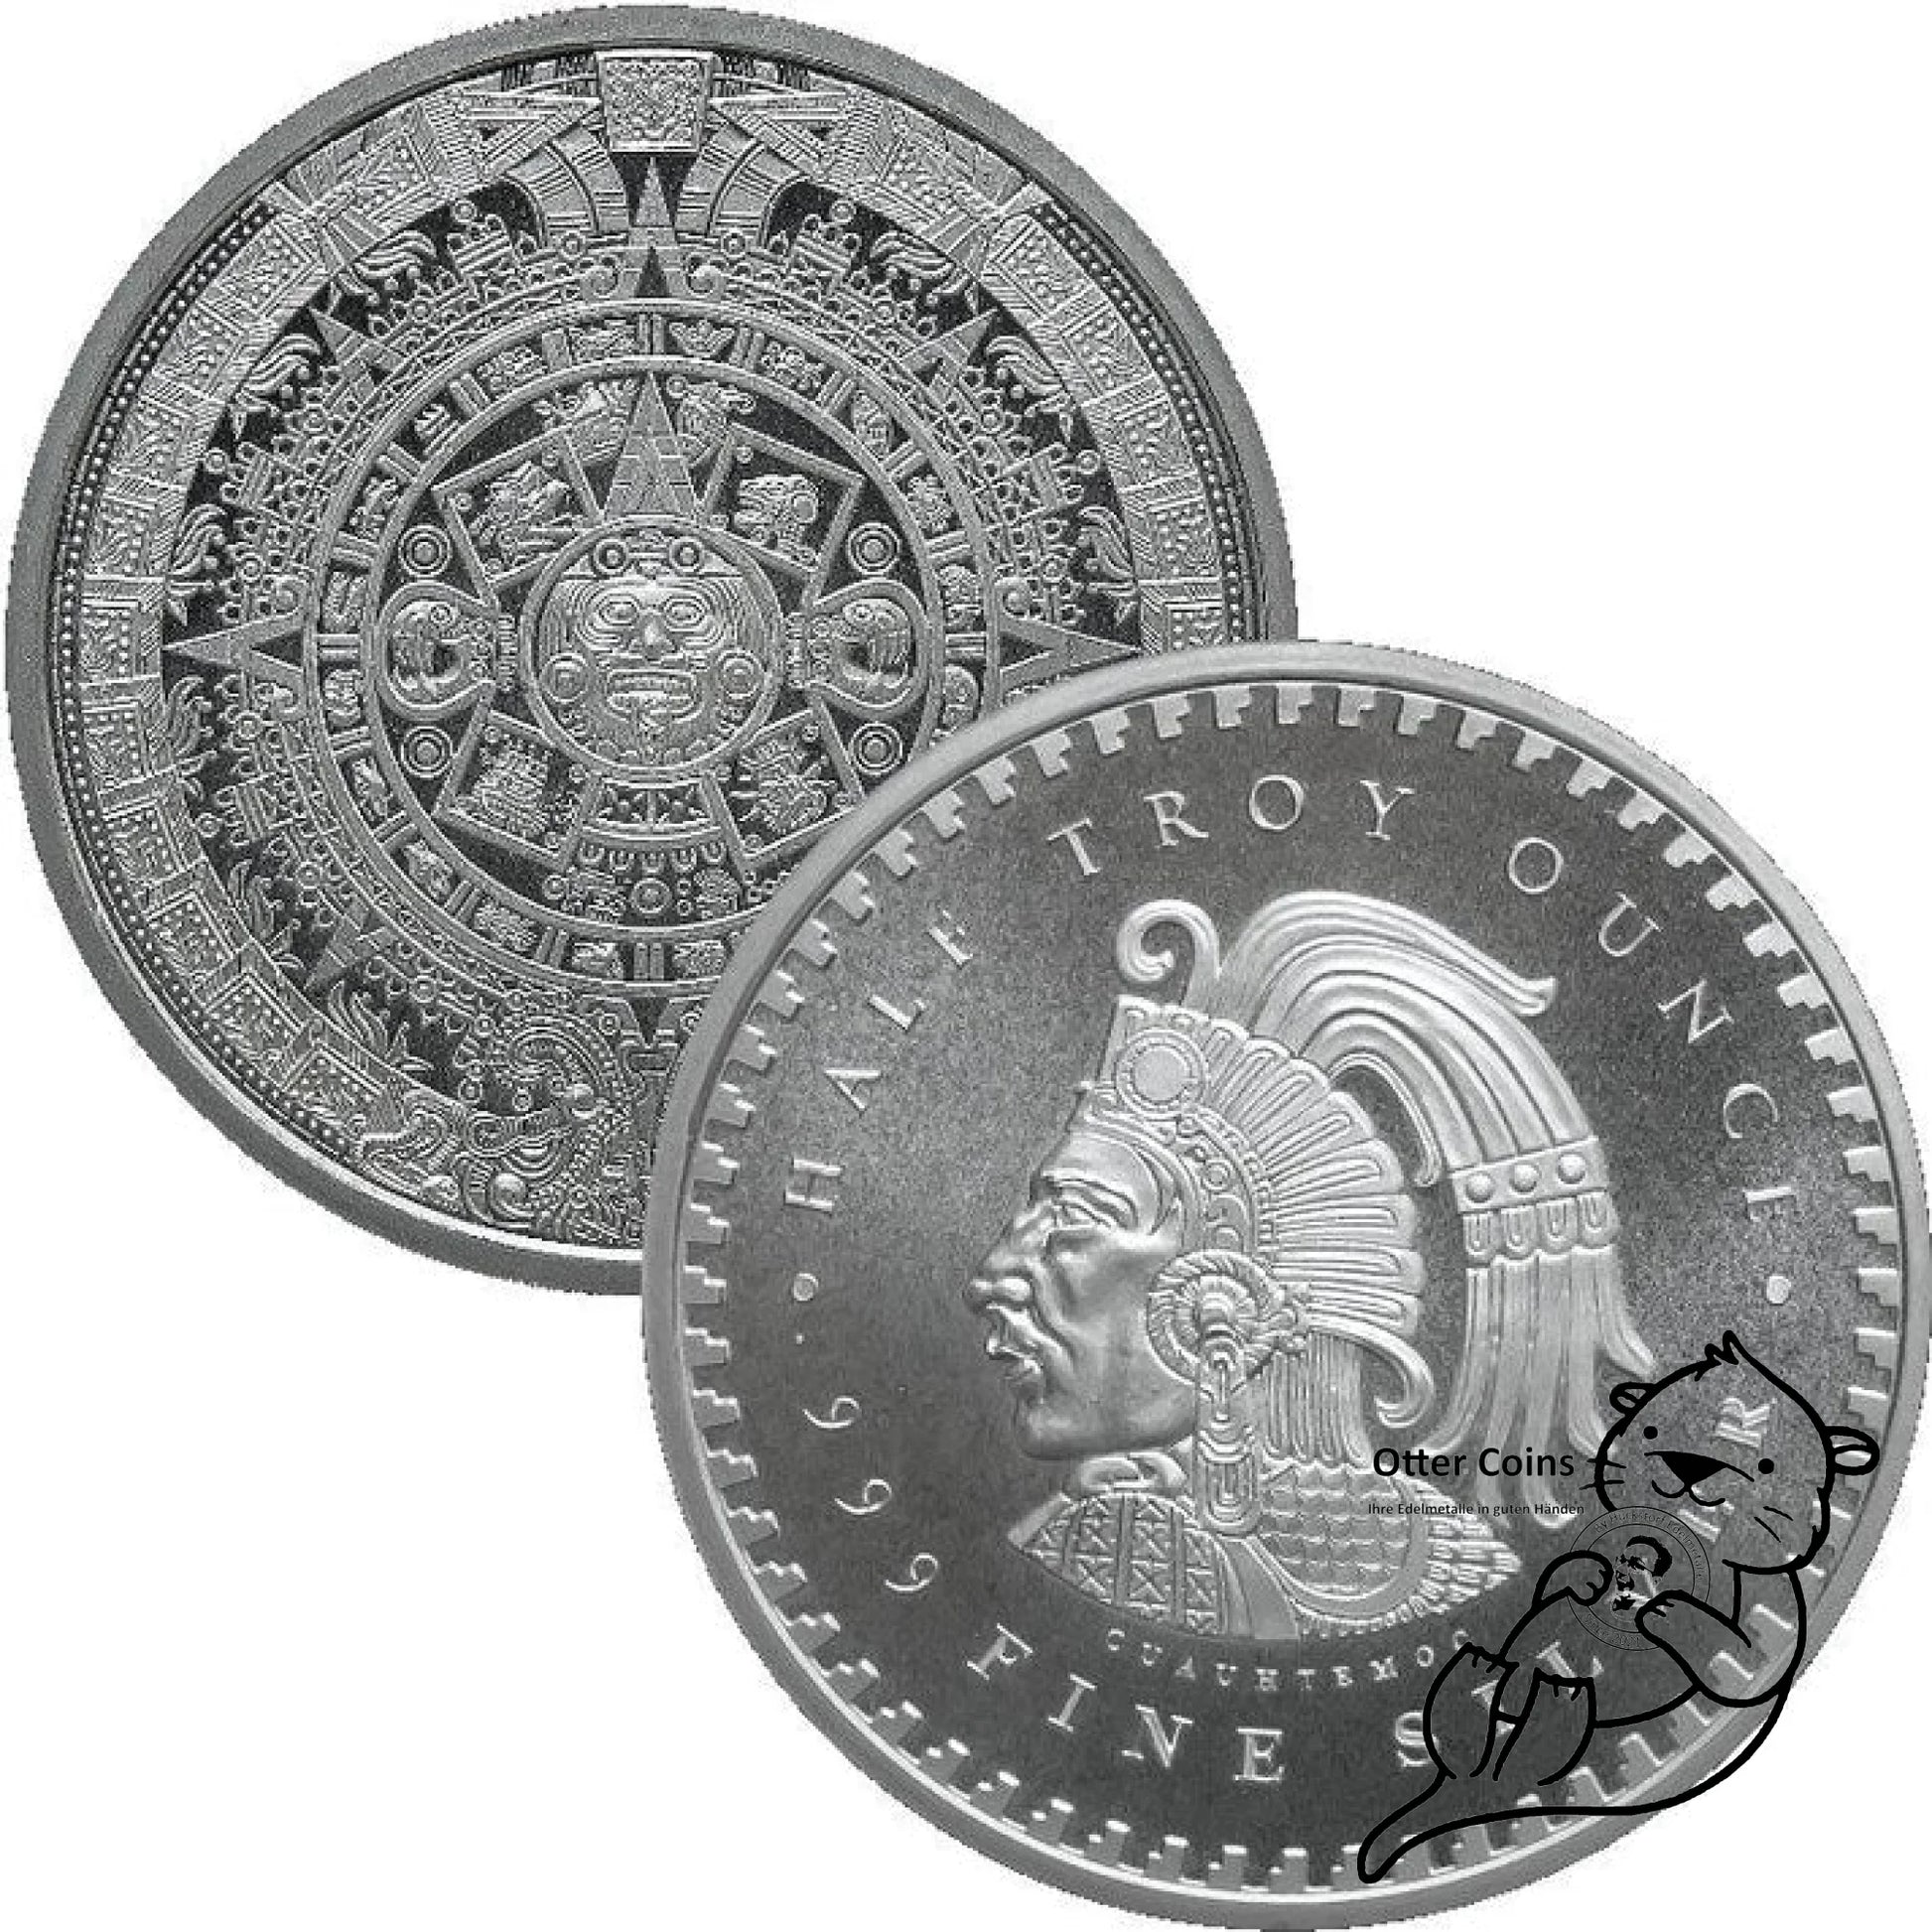 Aztekenkalender 1/10 oz Silbermünze